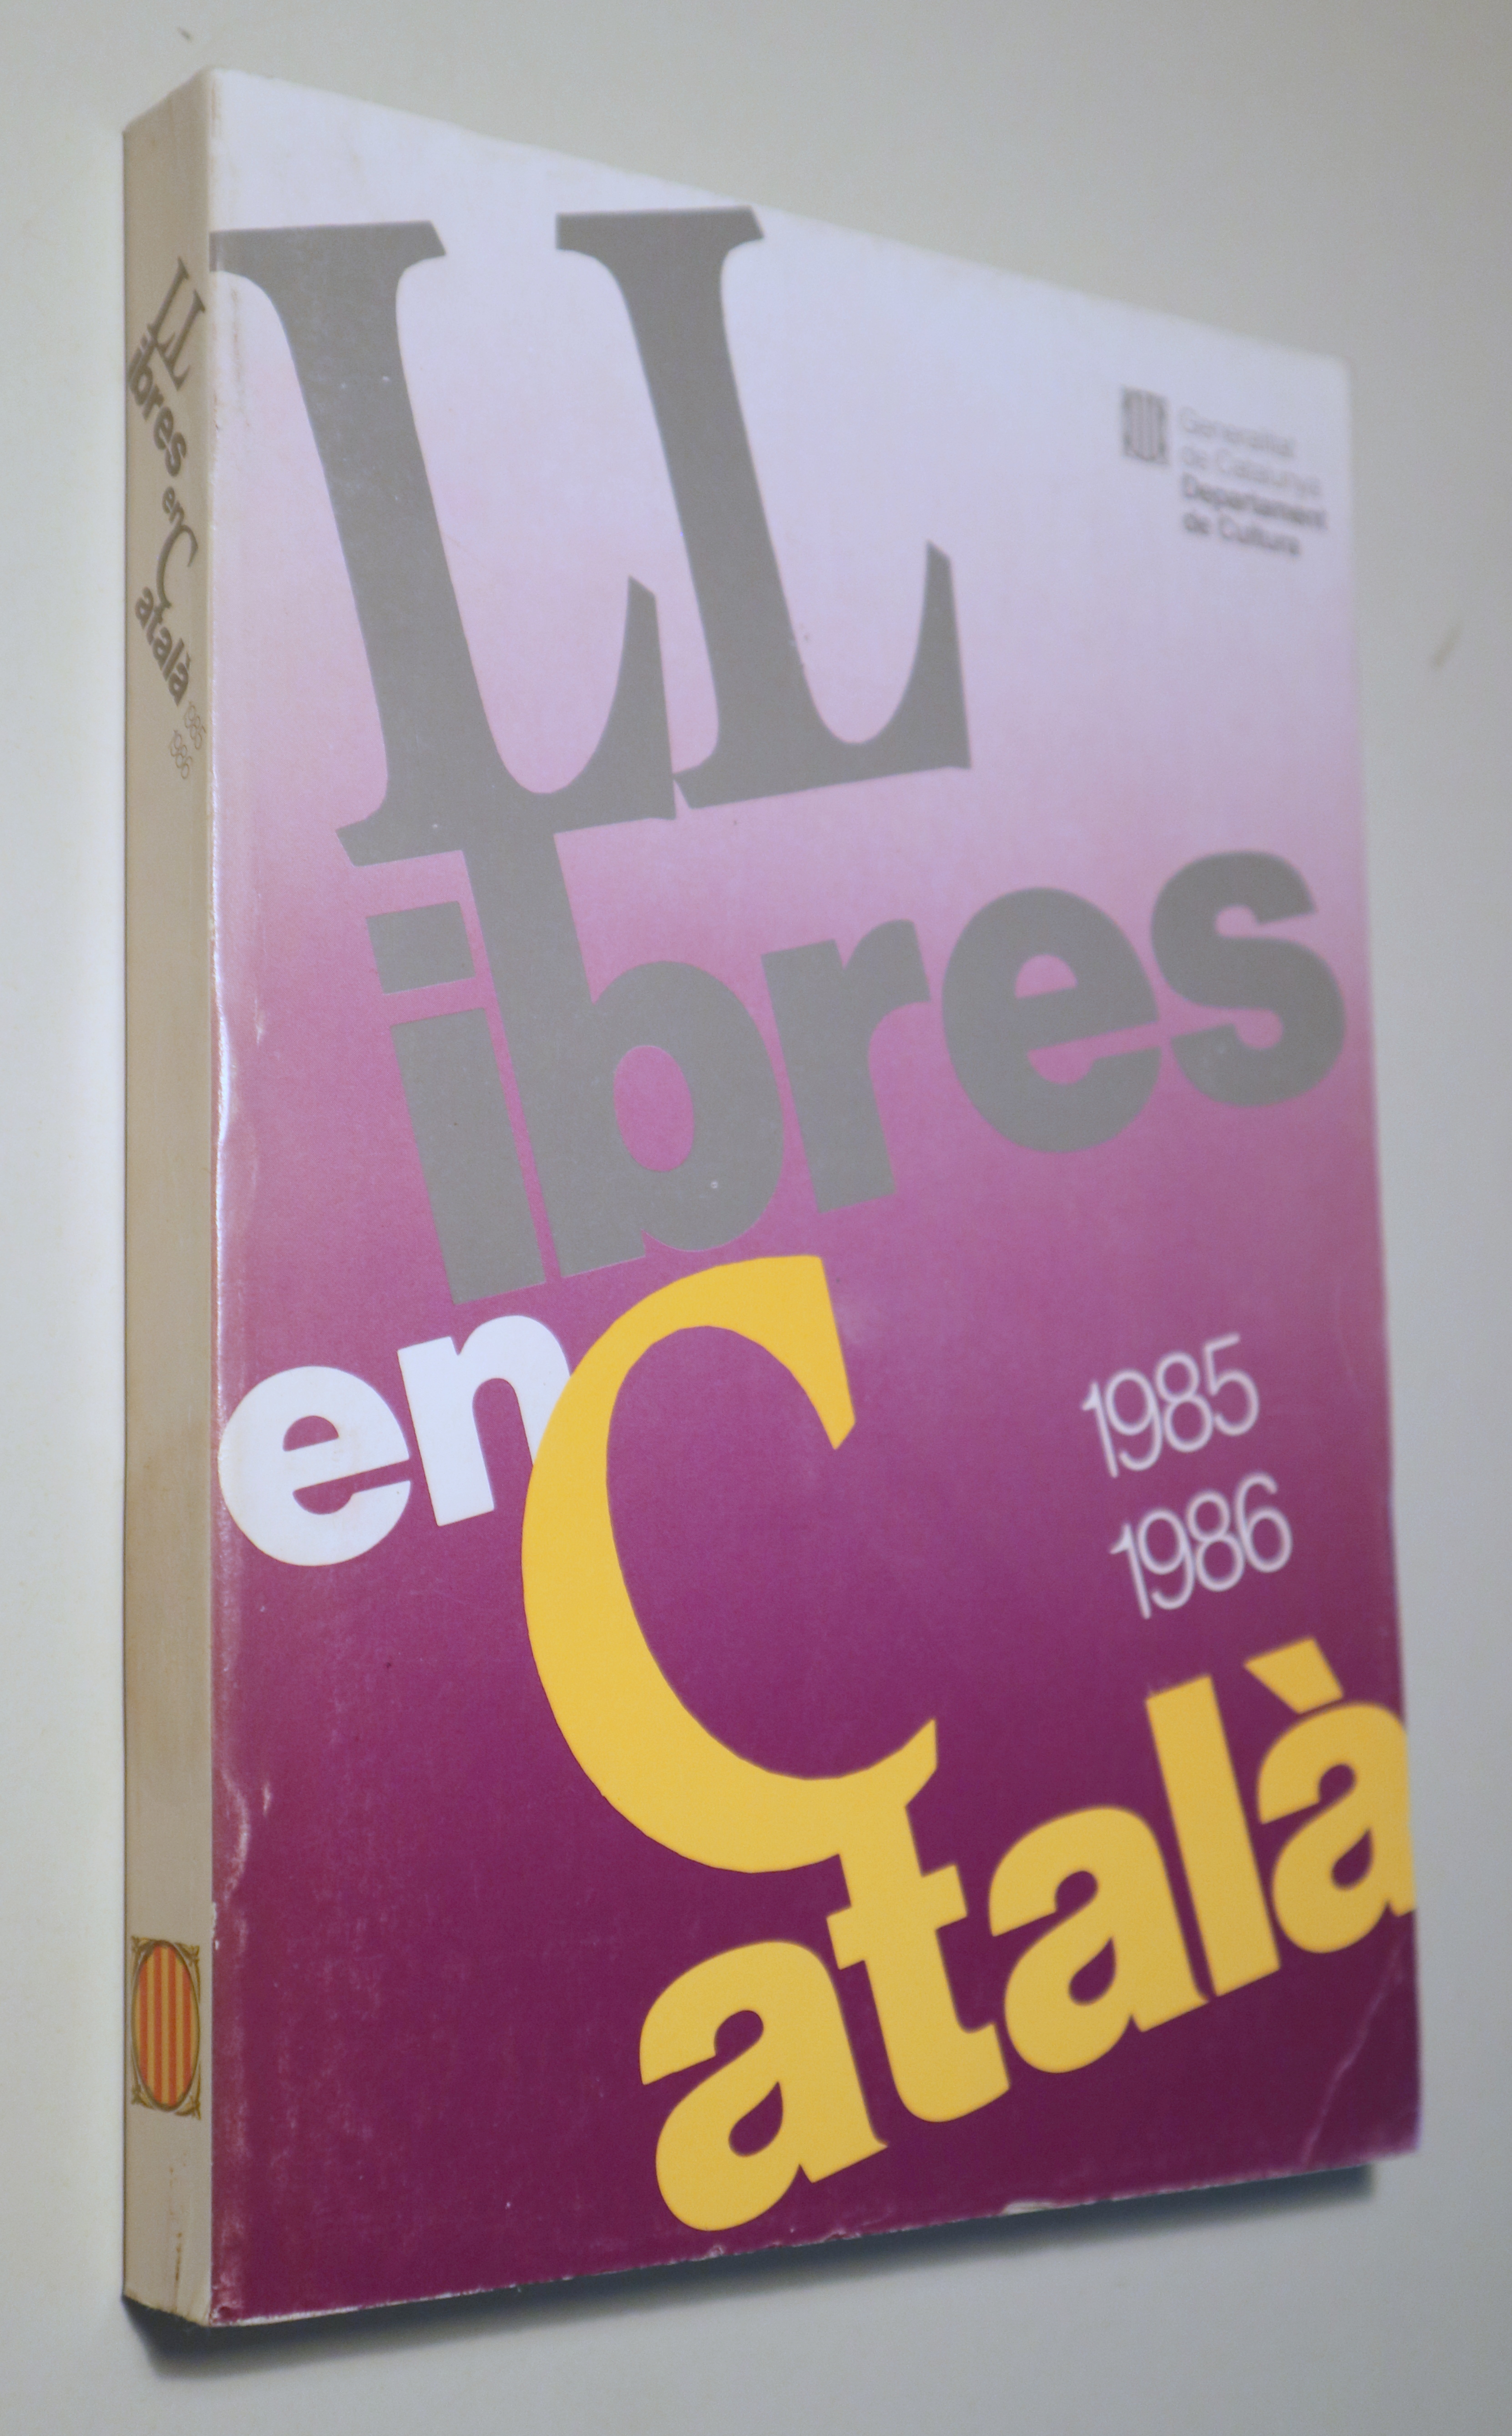 LLIBRES EN CATALÀ 1985-1986 - Barcelona 1988